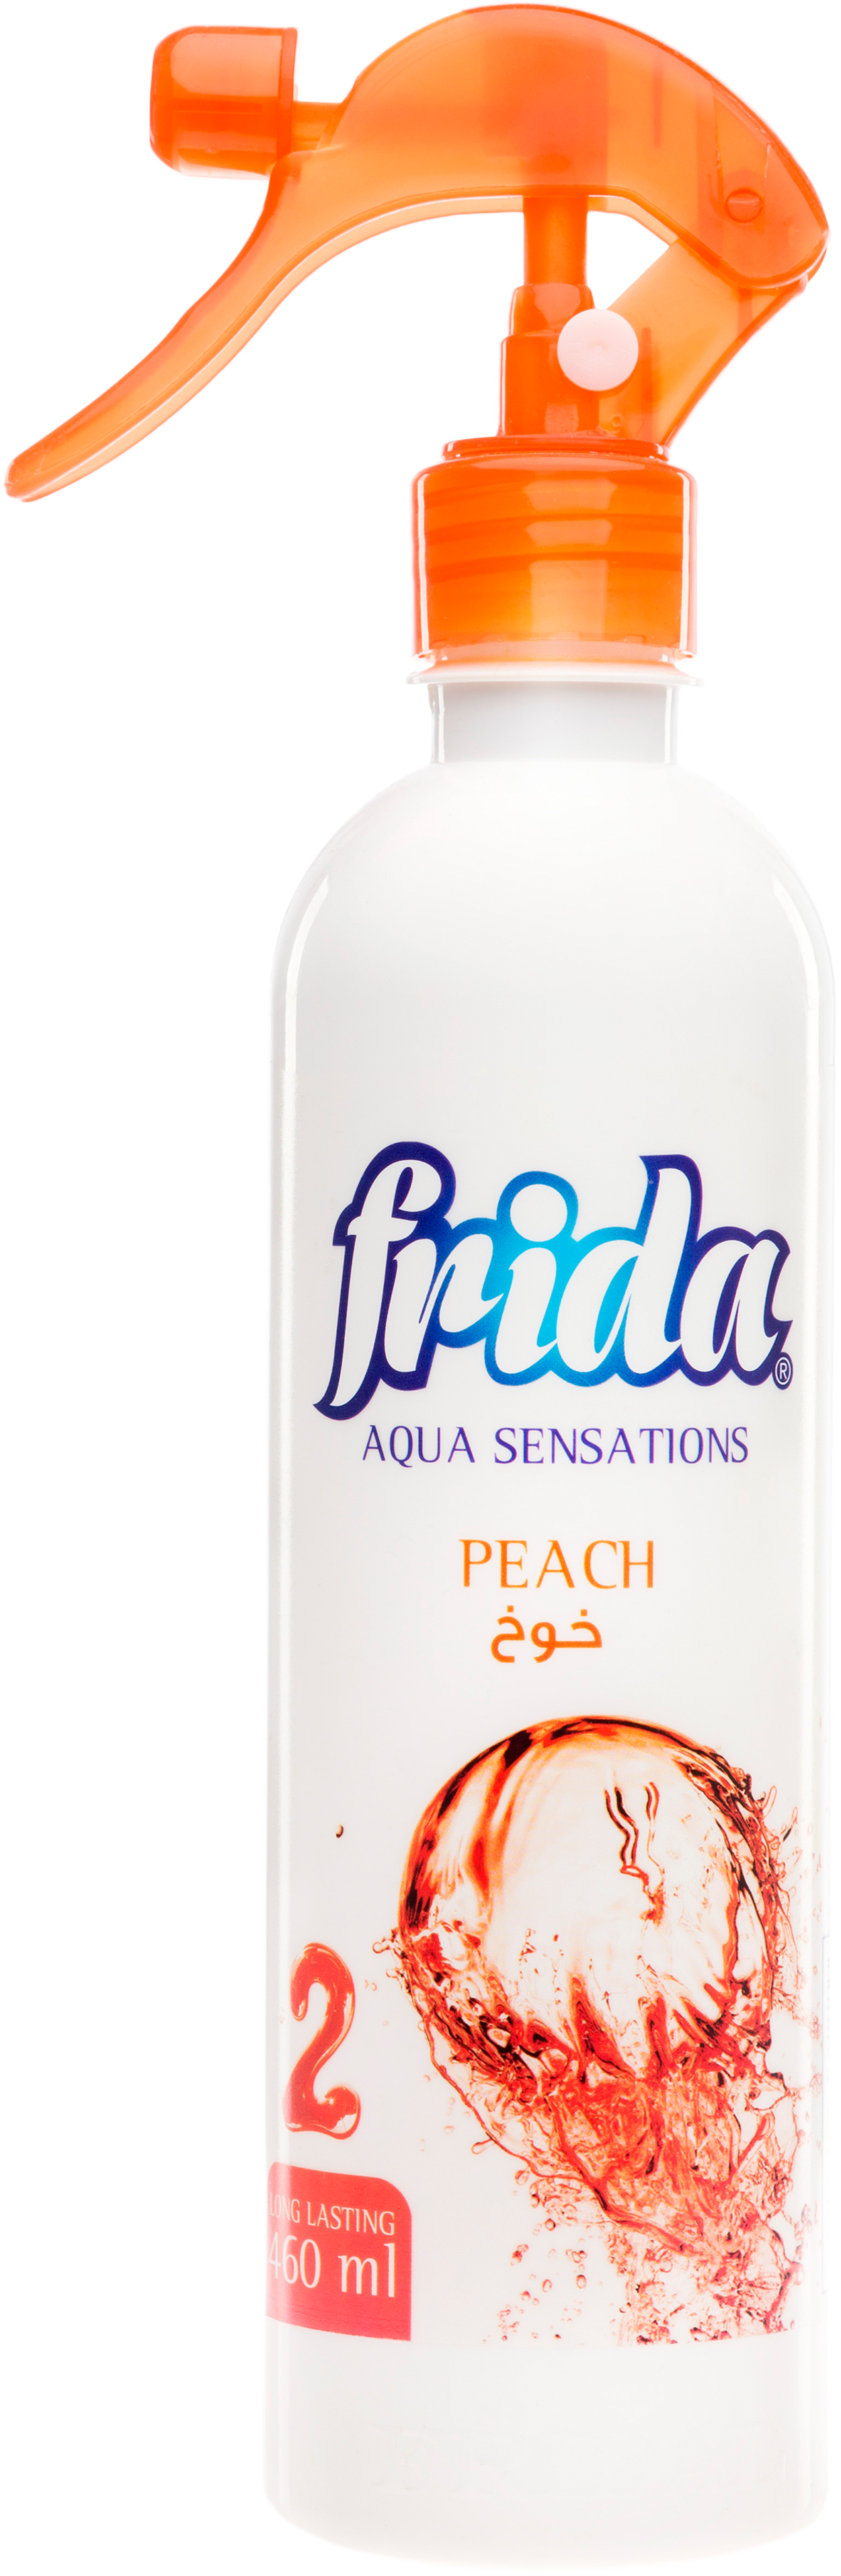 Frida Aqua Sensations "Peach"